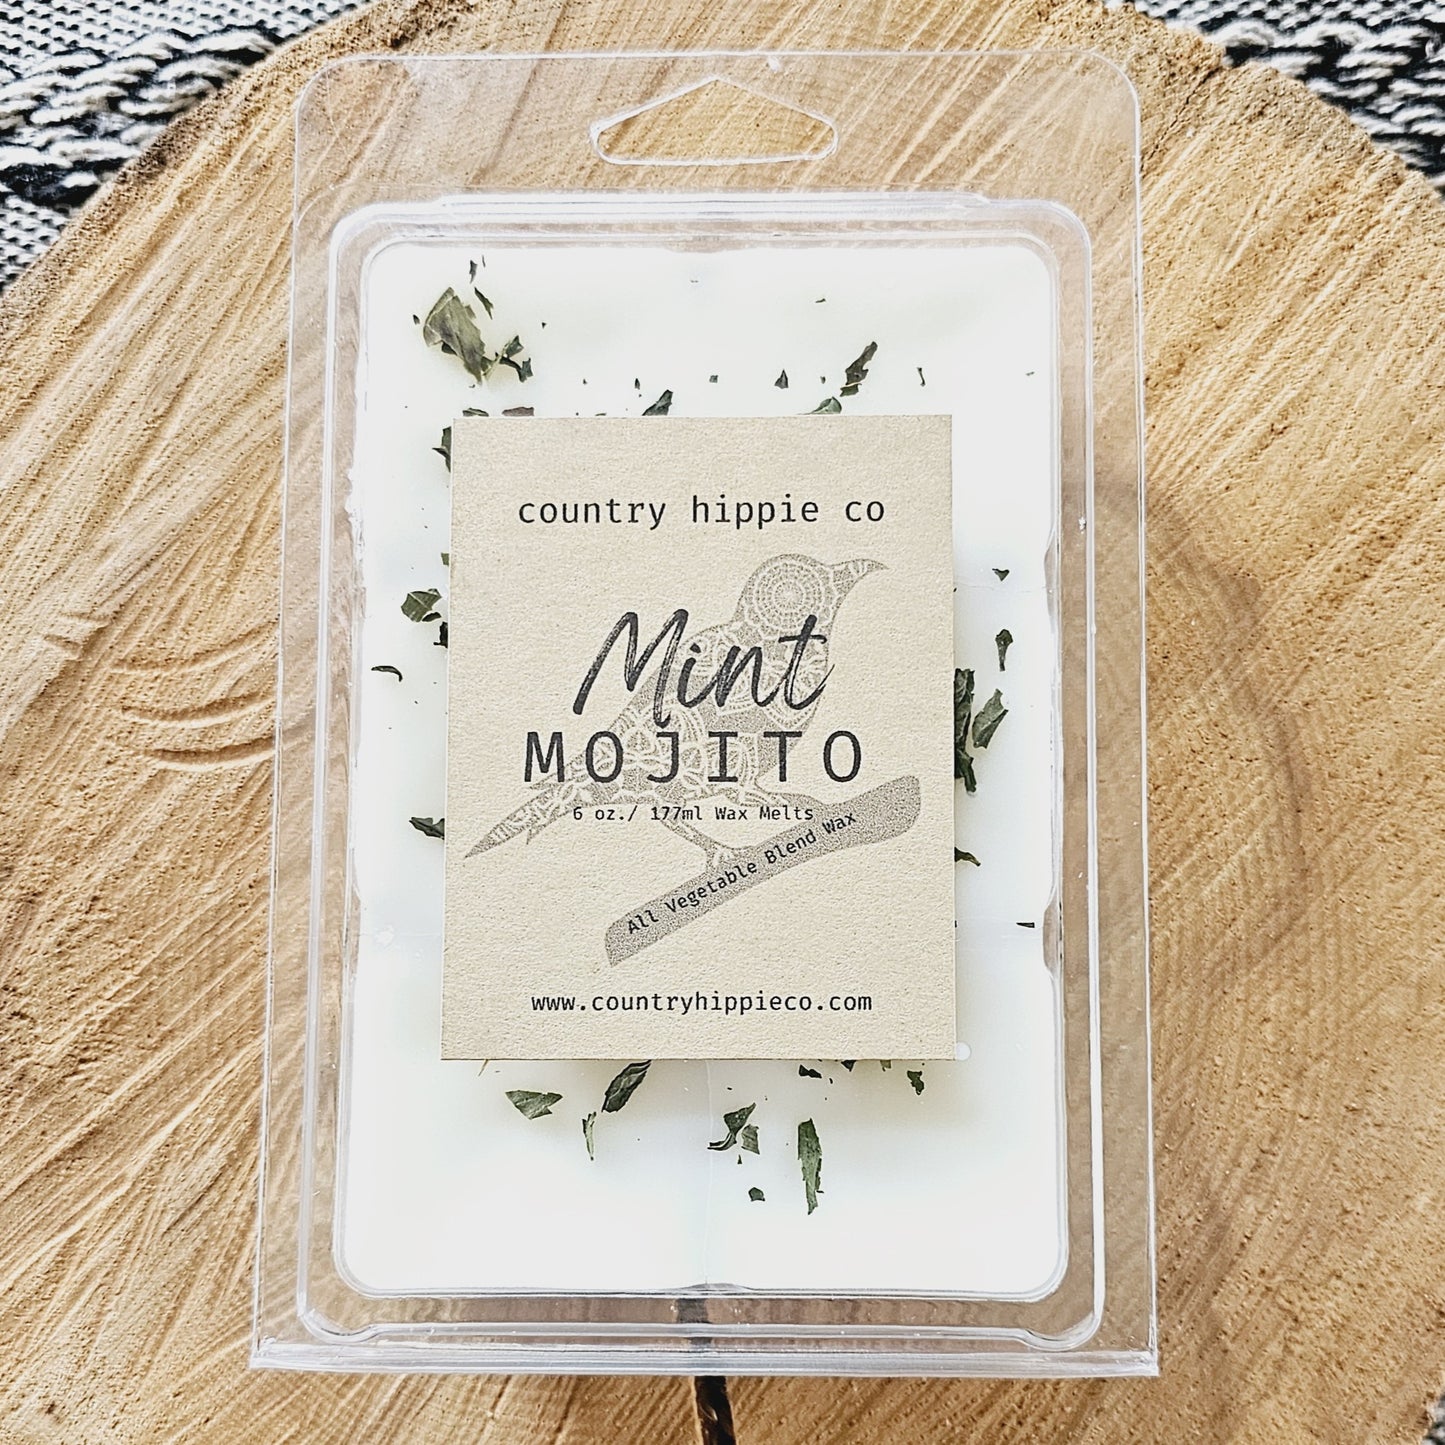 LARGE 6 oz. Mint Mojito Botanical Wax Melts